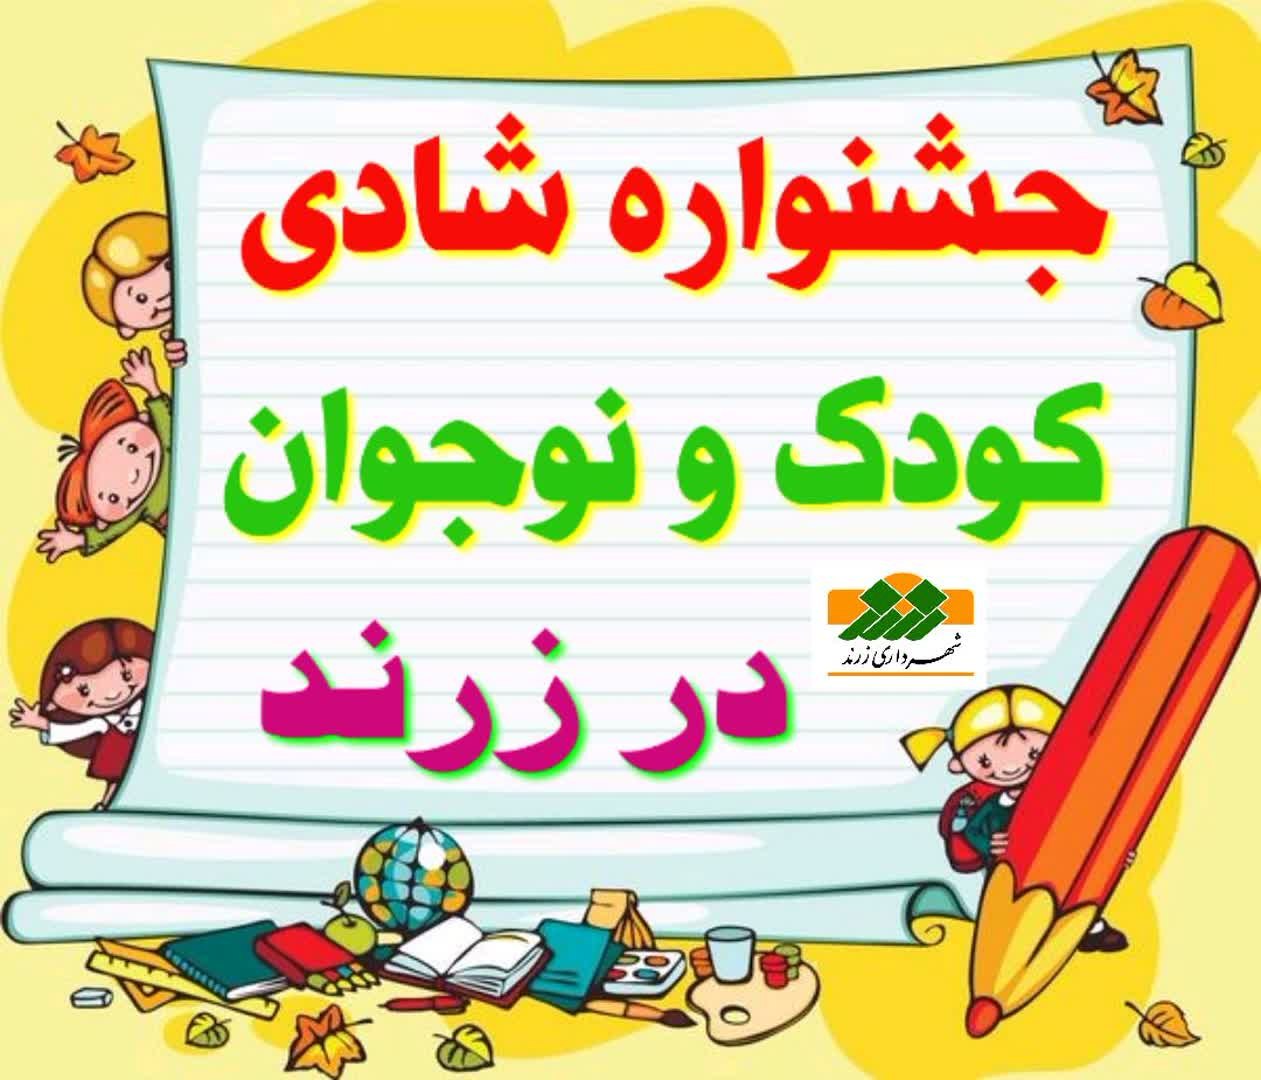 ۲۰ آبان؛ برگزاری جشنواره شادی کودک و نوجوان در زرند